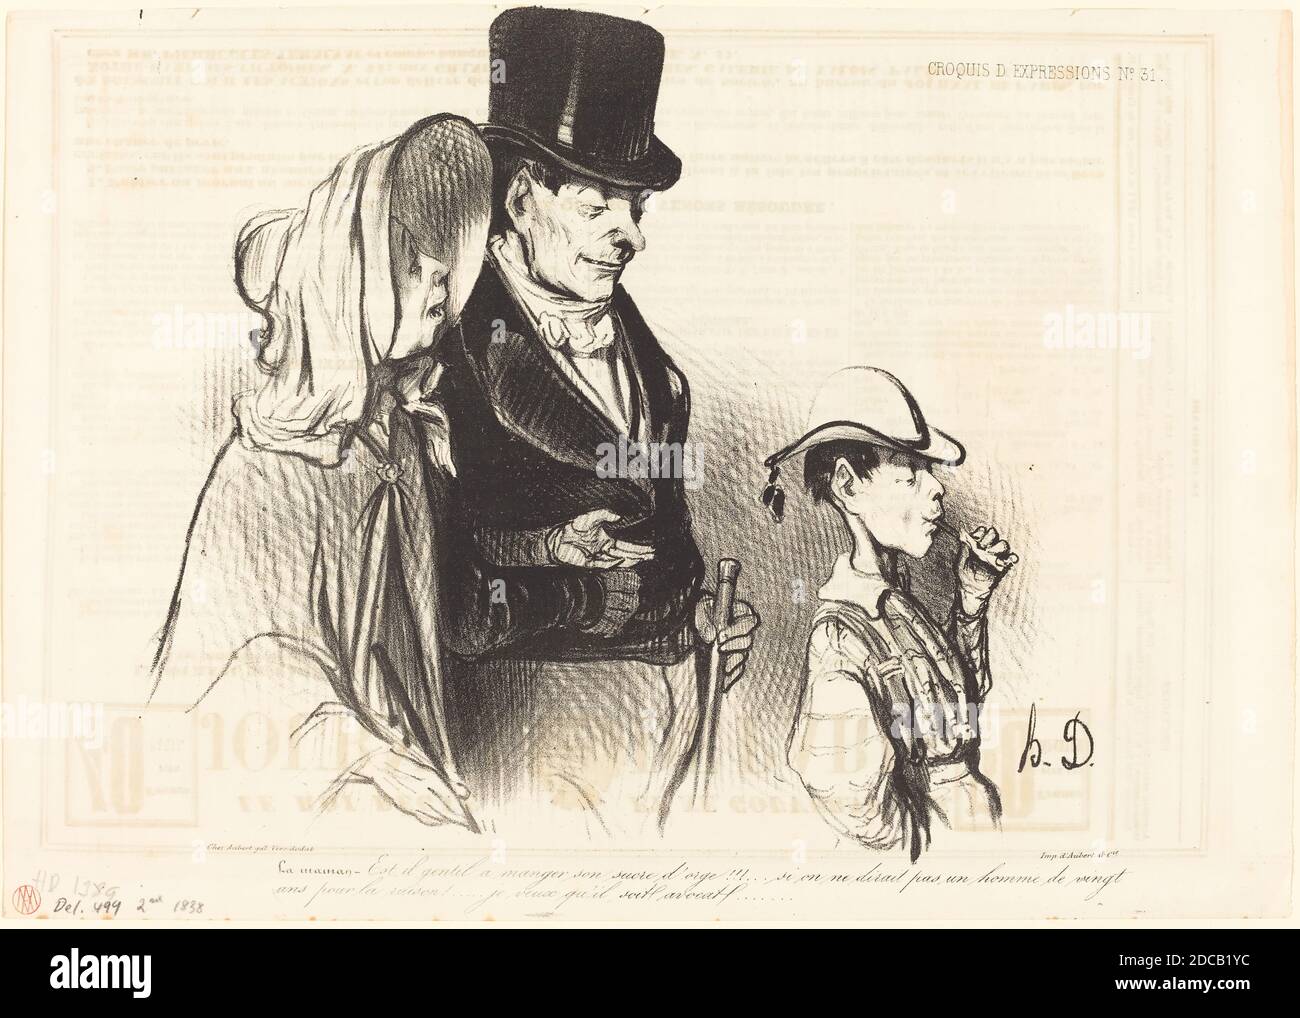 Honoré Daumier, (artist), French, 1808 - 1879, La Maman - Est-il gentil a  manger son sucre d'orge!..., Croquis d'expressions: pl.31, (series), 1838,  lithograph on newsprint Stock Photo - Alamy